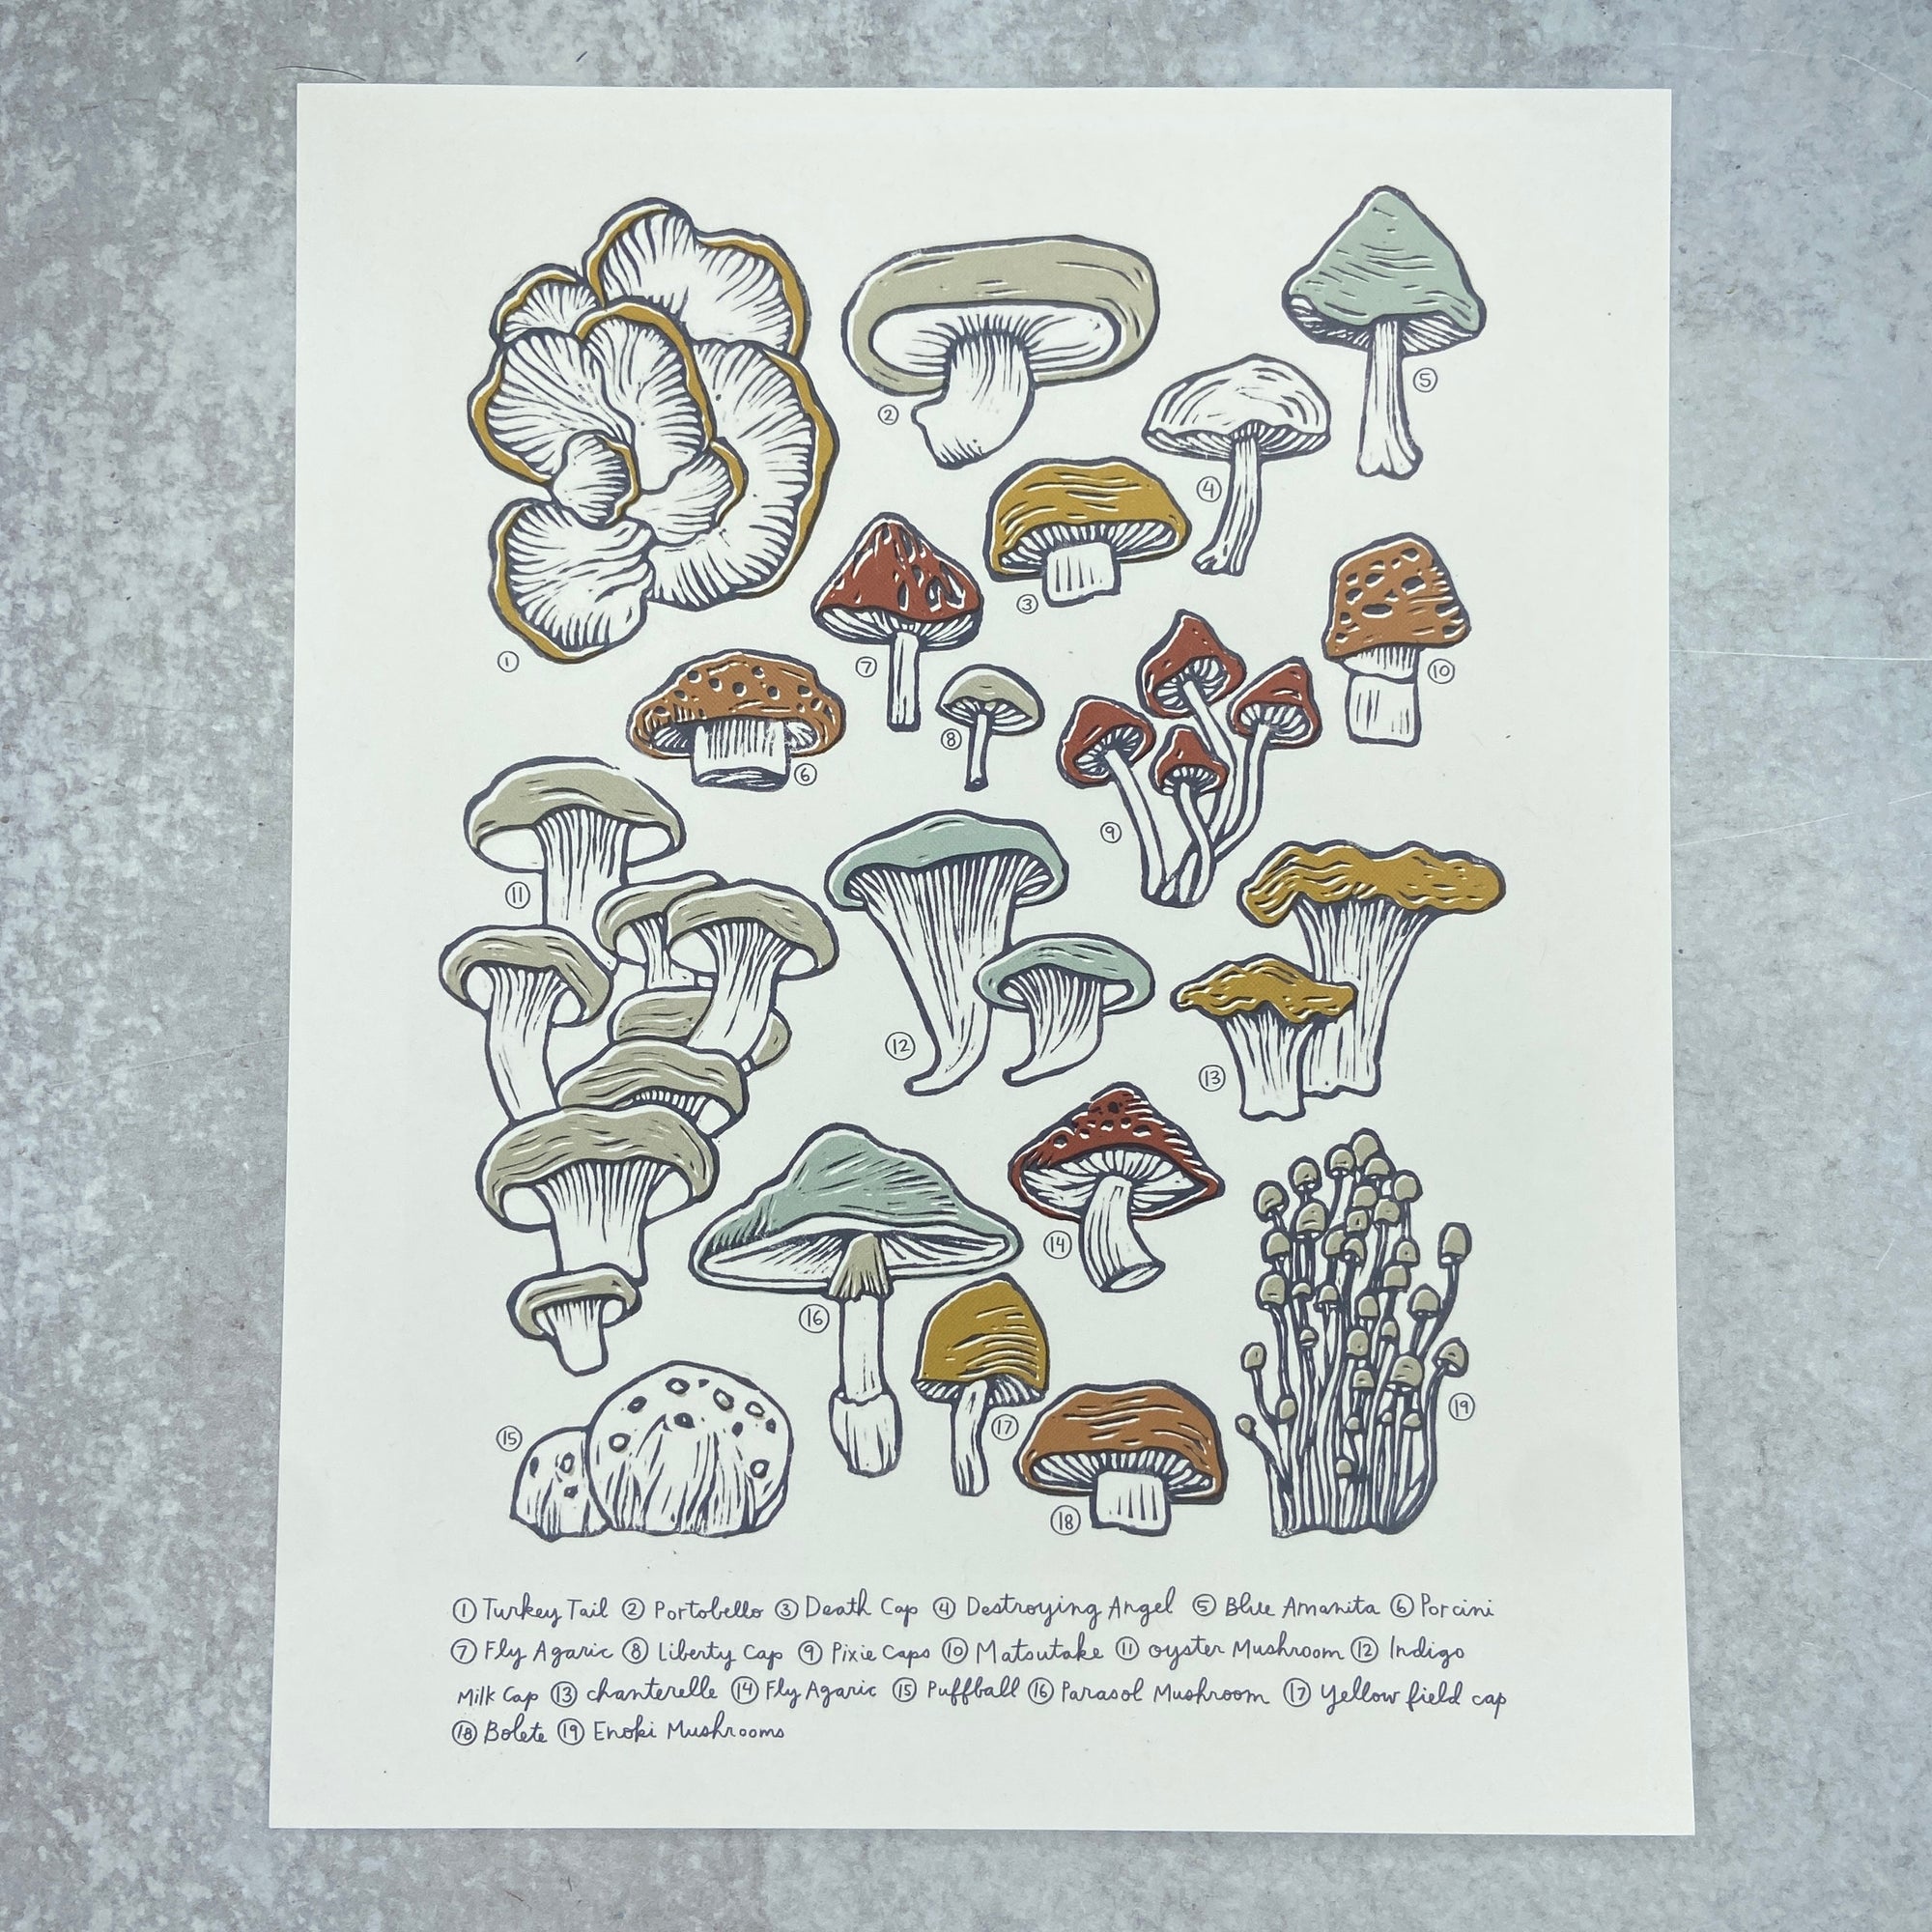 Mushrooms & Fungi - Print